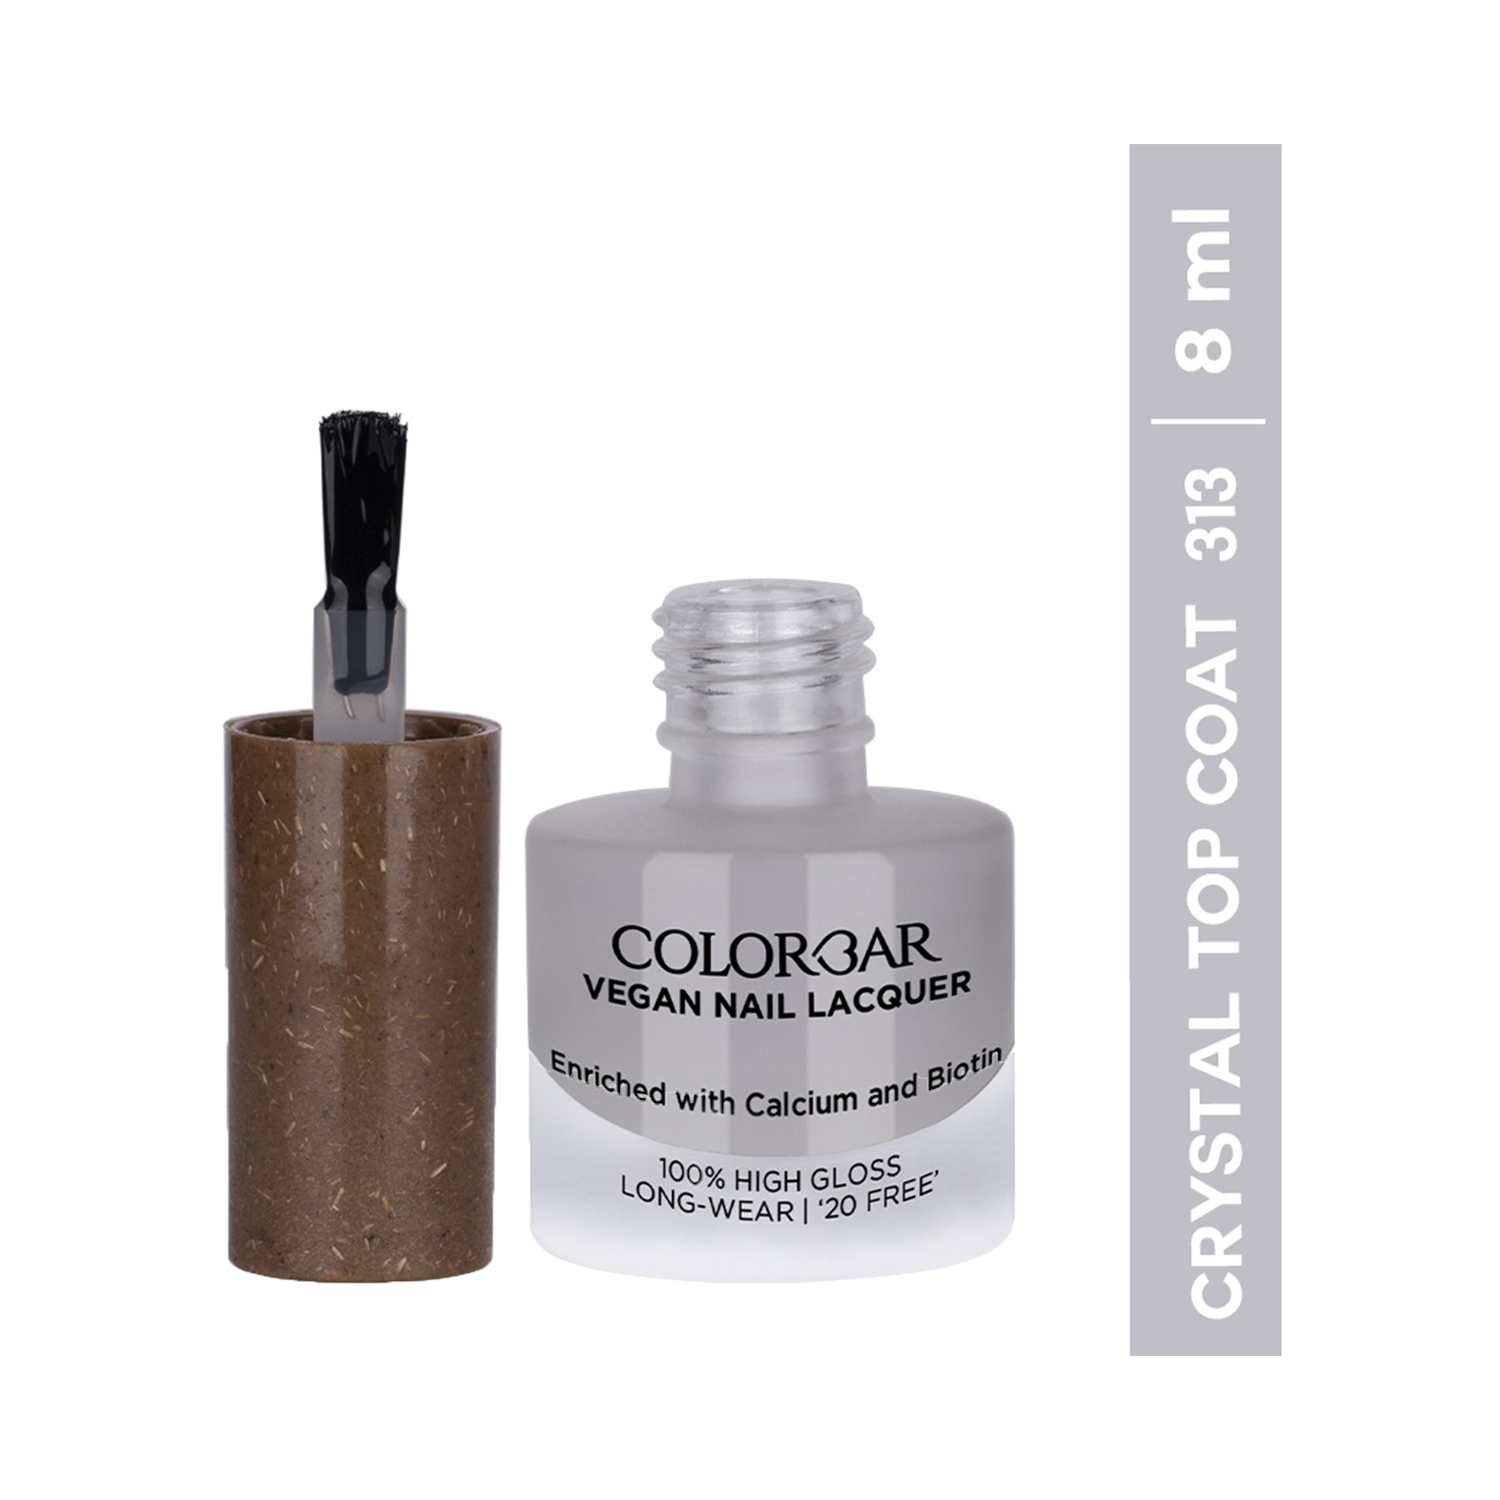 Colorbar Vegan Nail Lacquer - 313 Crystal Top Coat (8ml)